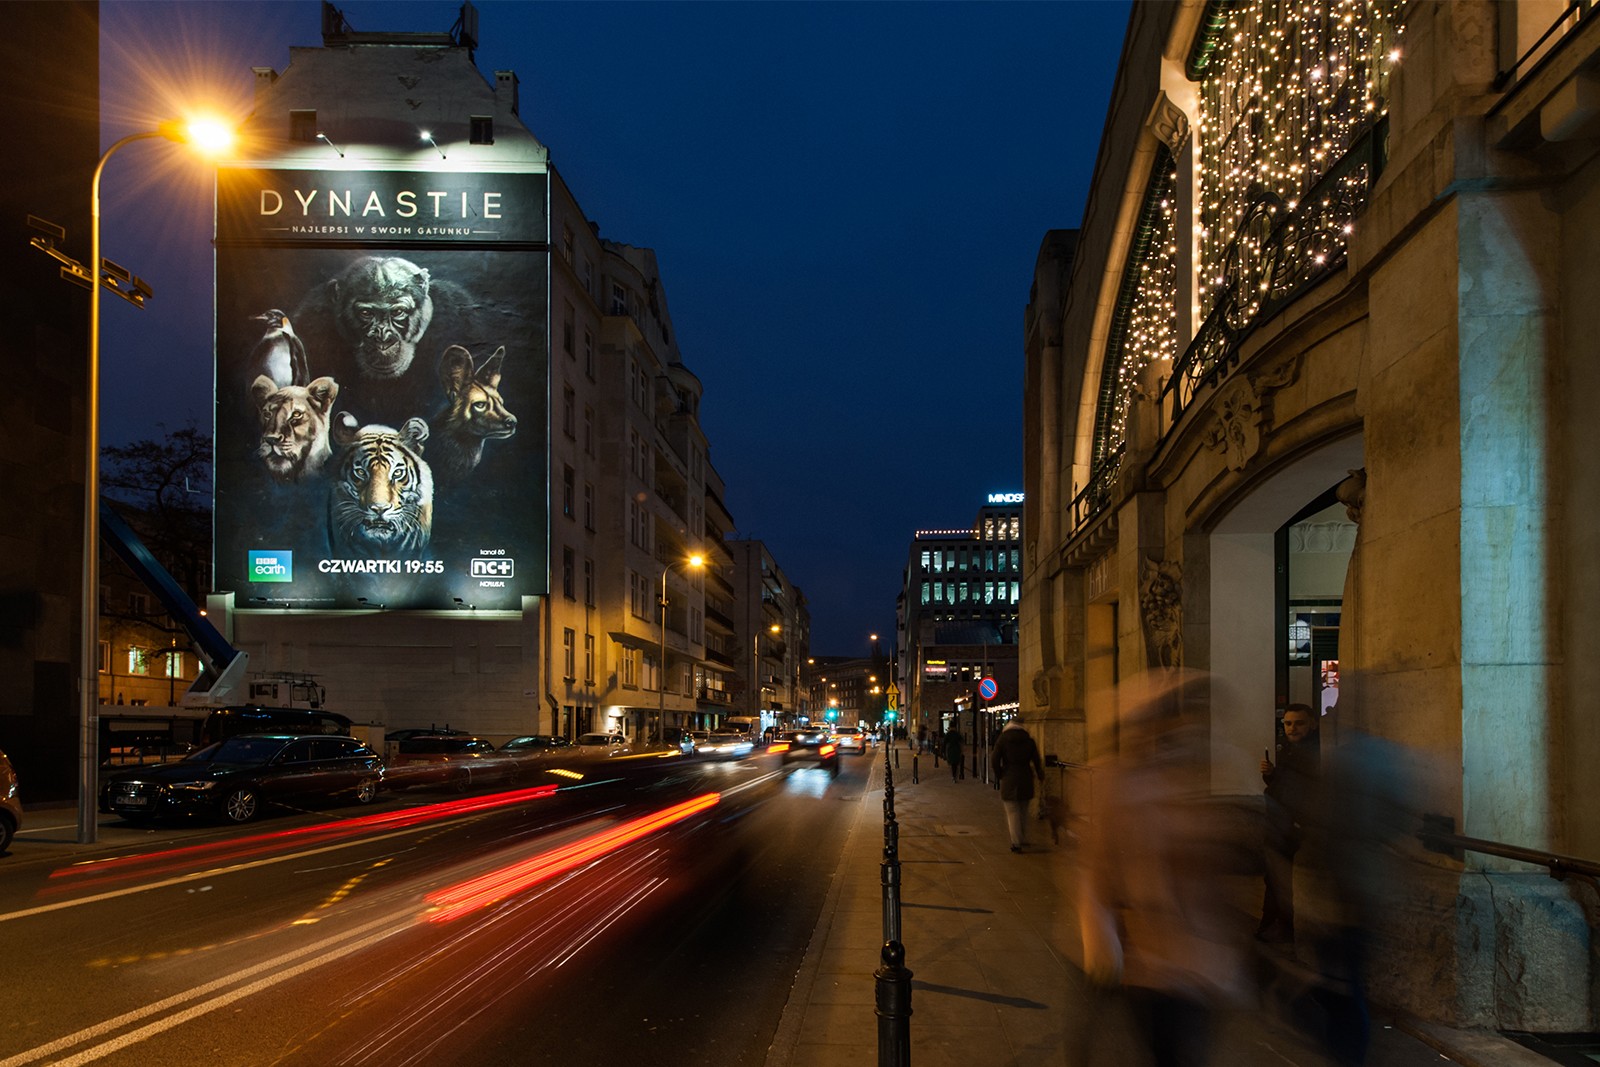 Mural reklamowy dla BBC Earth przy ul. Pięknej w Warszawie w nocy | Dynastie | Portfolio